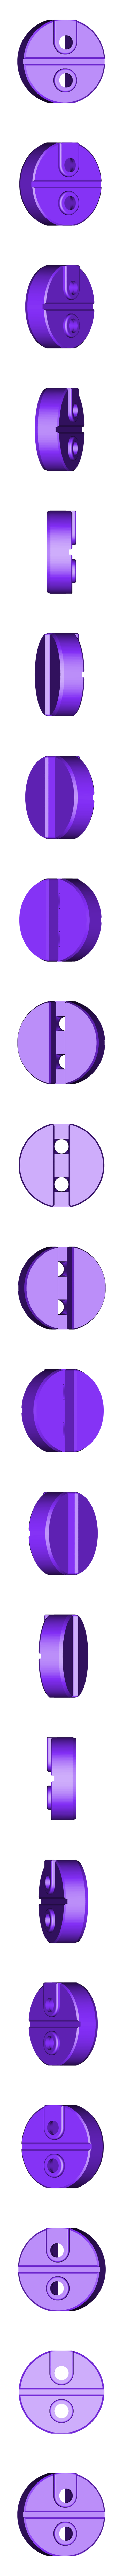 lightsaber clipart transparent purple